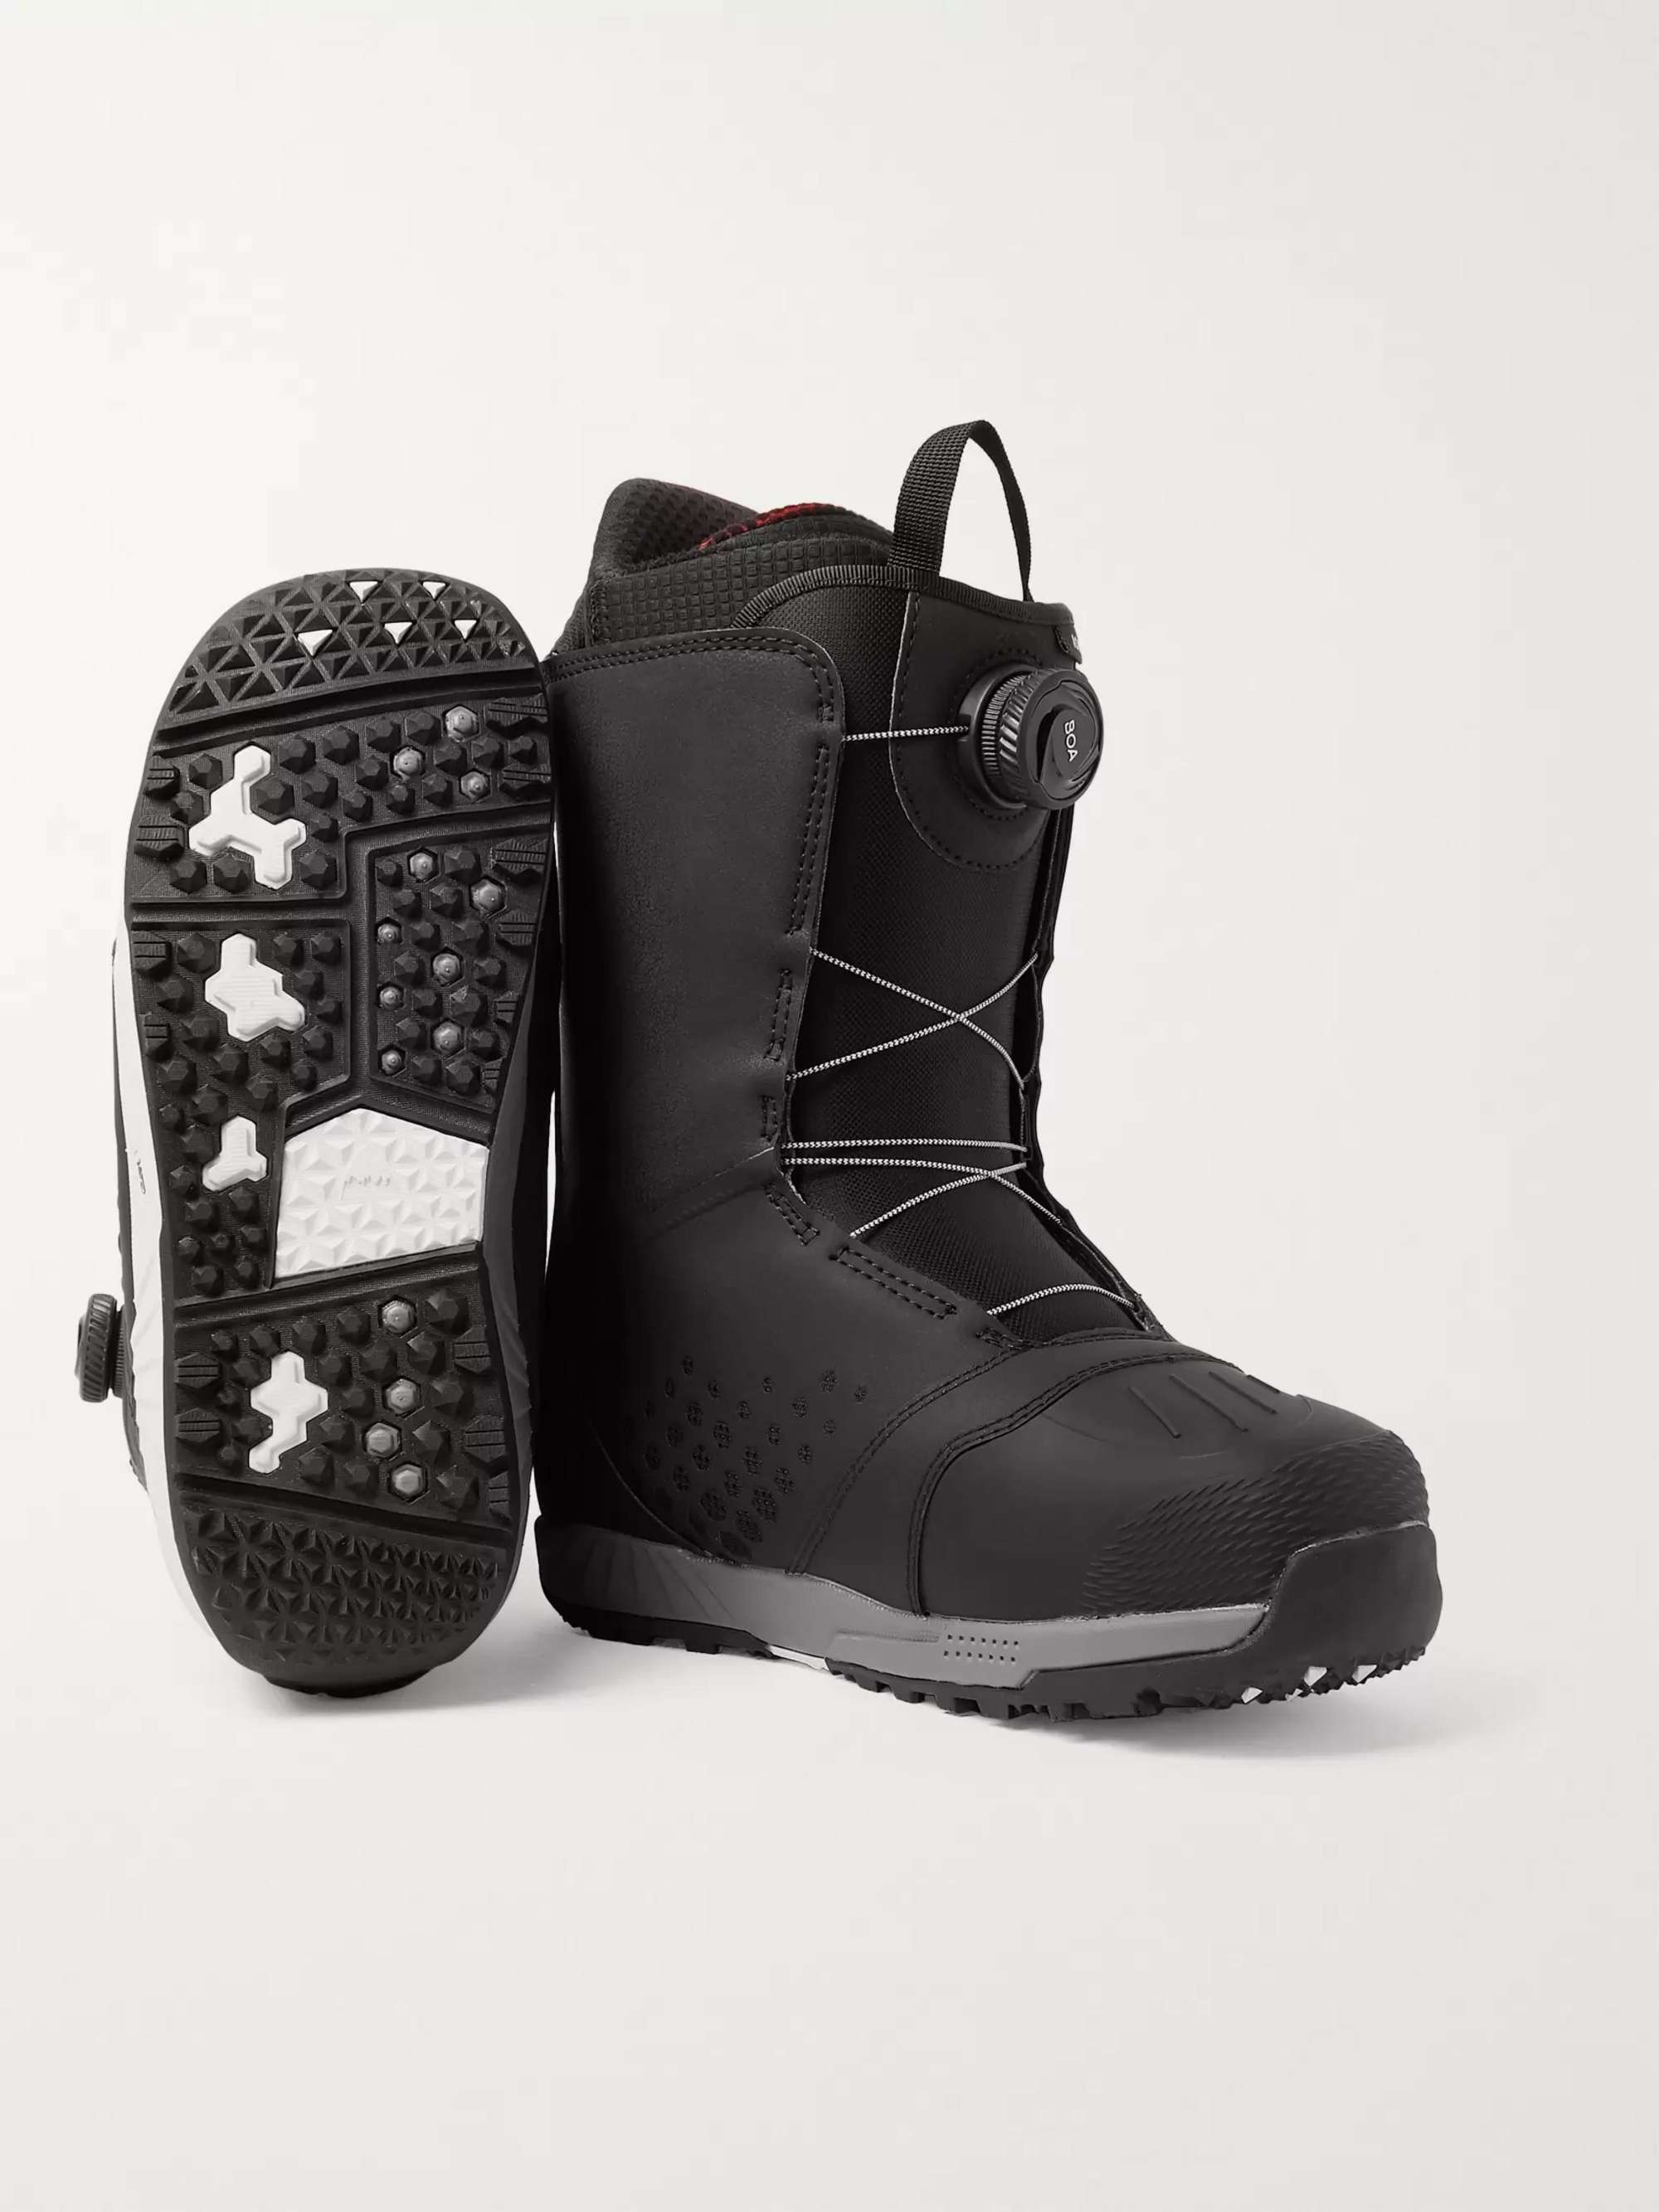 Black Ion Boa Snowboard Boots | BURTON | MR PORTER